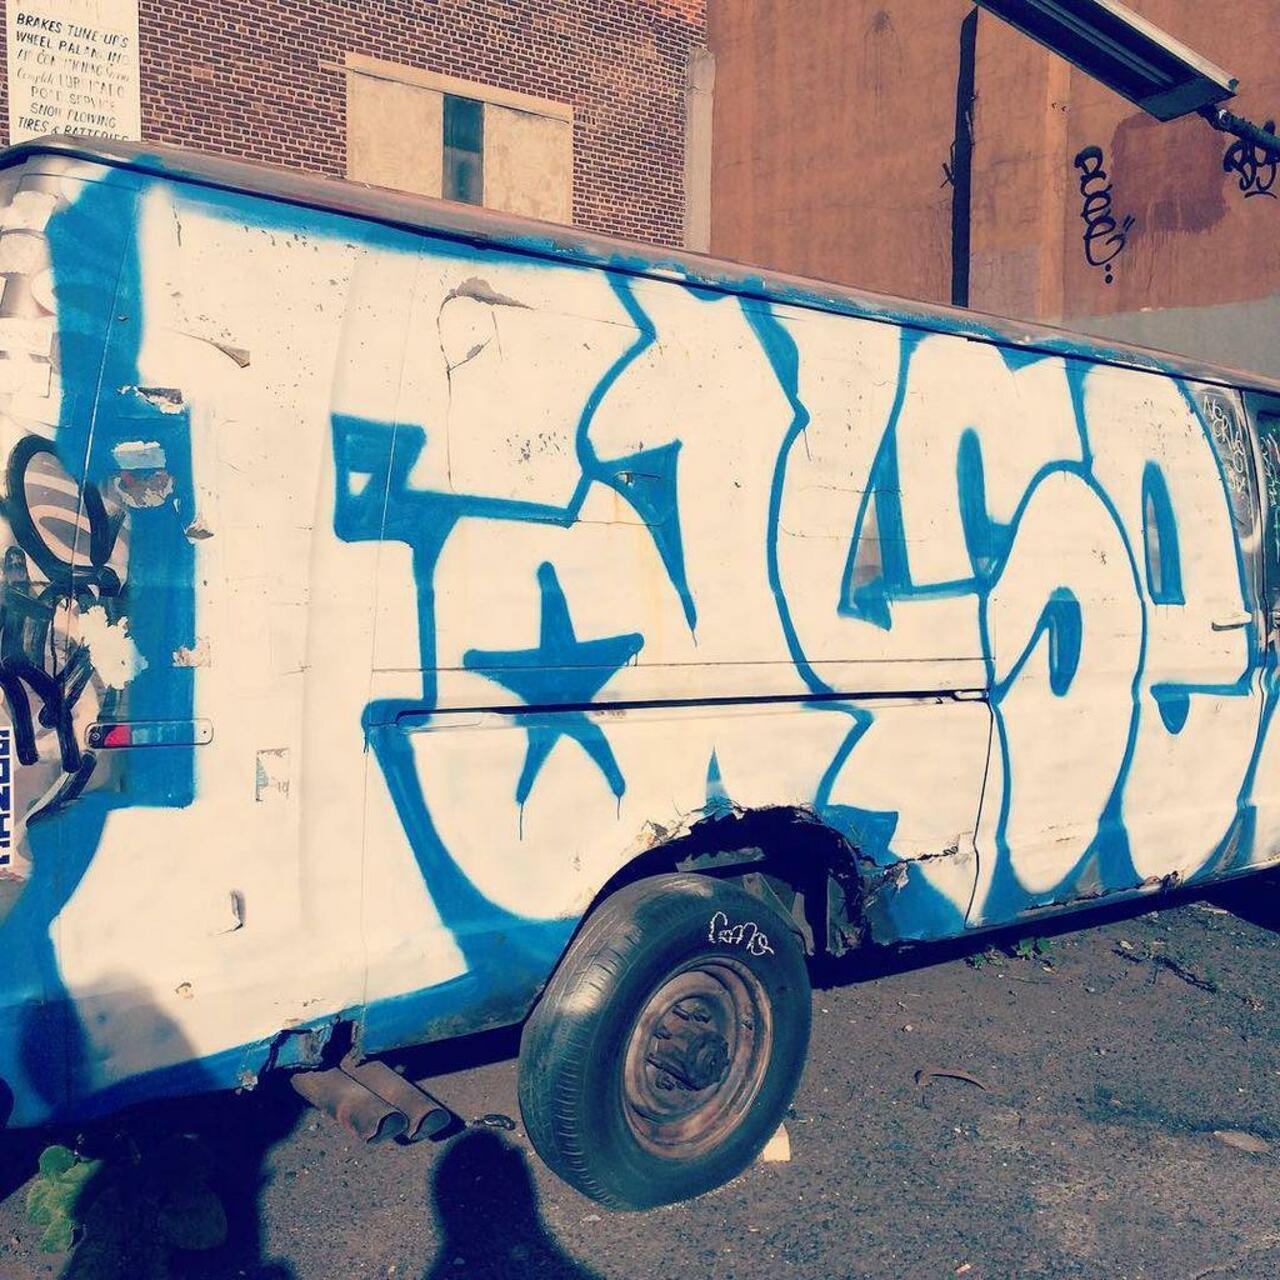 #nycgraffititruck #nyctags #nycgraffiti #nycstreetart #nycgraffart #graffiti #graffitiwalls #tags #streetart #stree… http://t.co/OvA7xs3Gbx